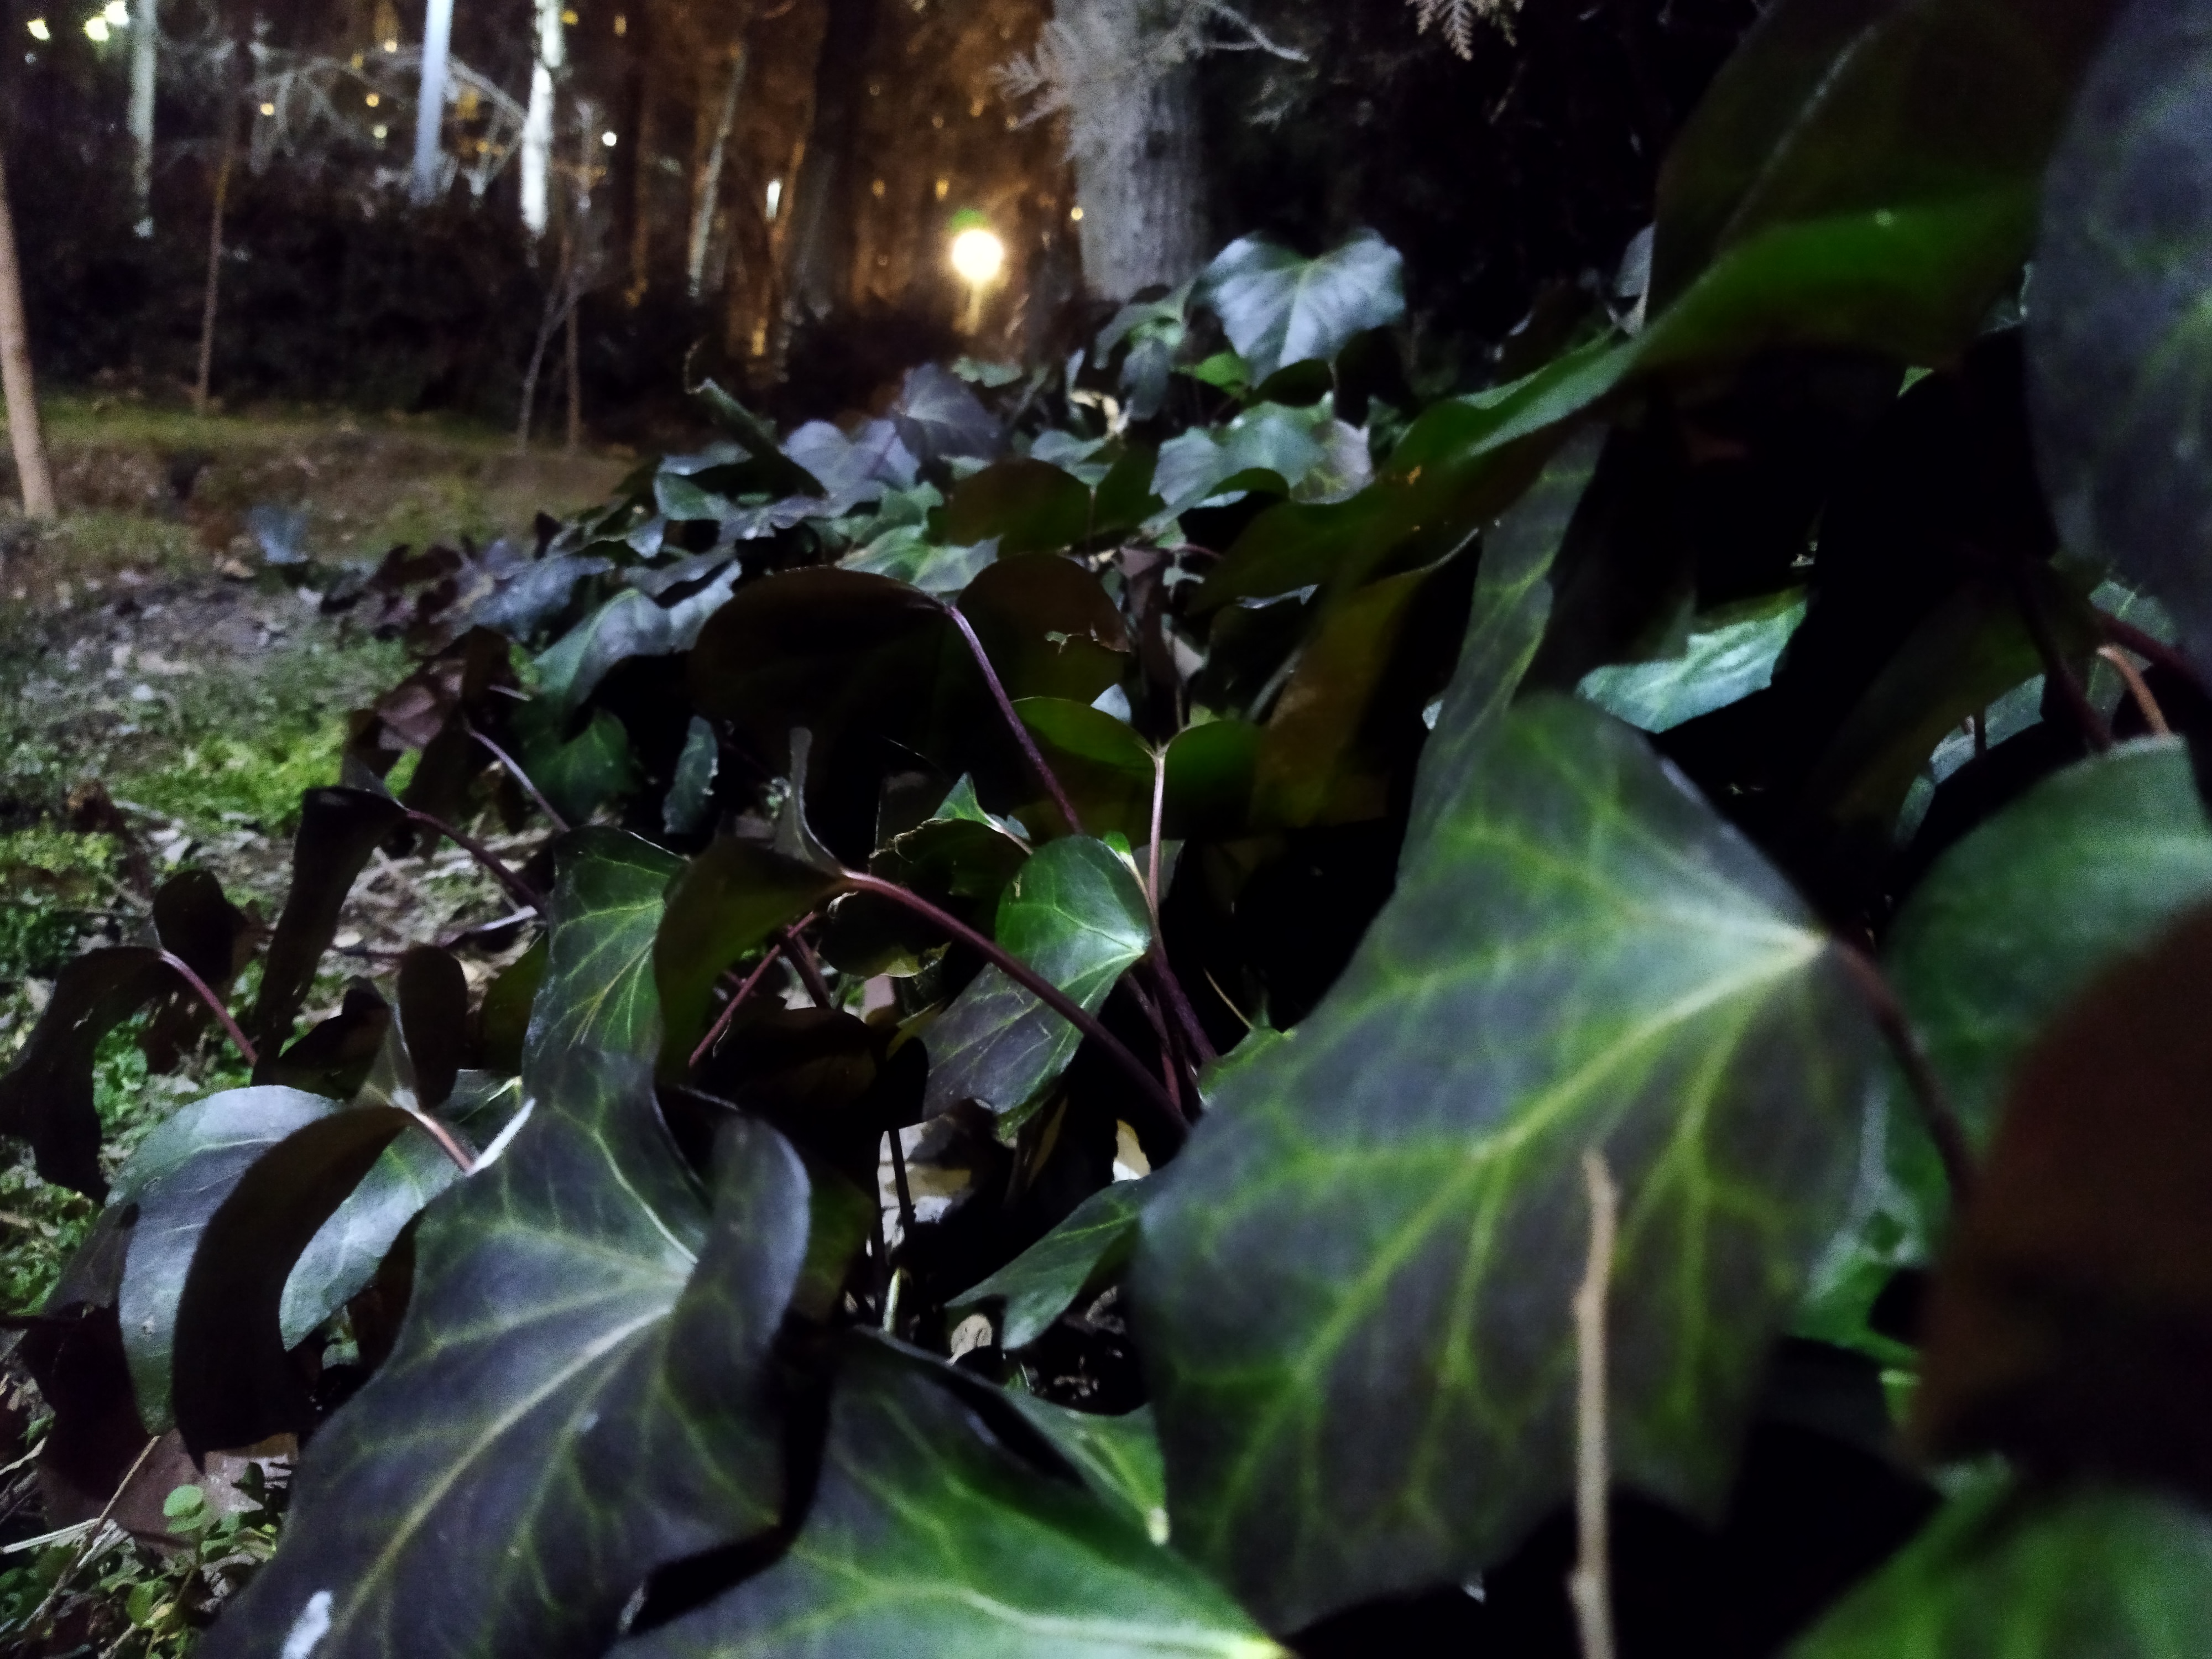 نمونه عکس با دوربین اصلی پوکو ام ۳ در شب عکاسی از برگ